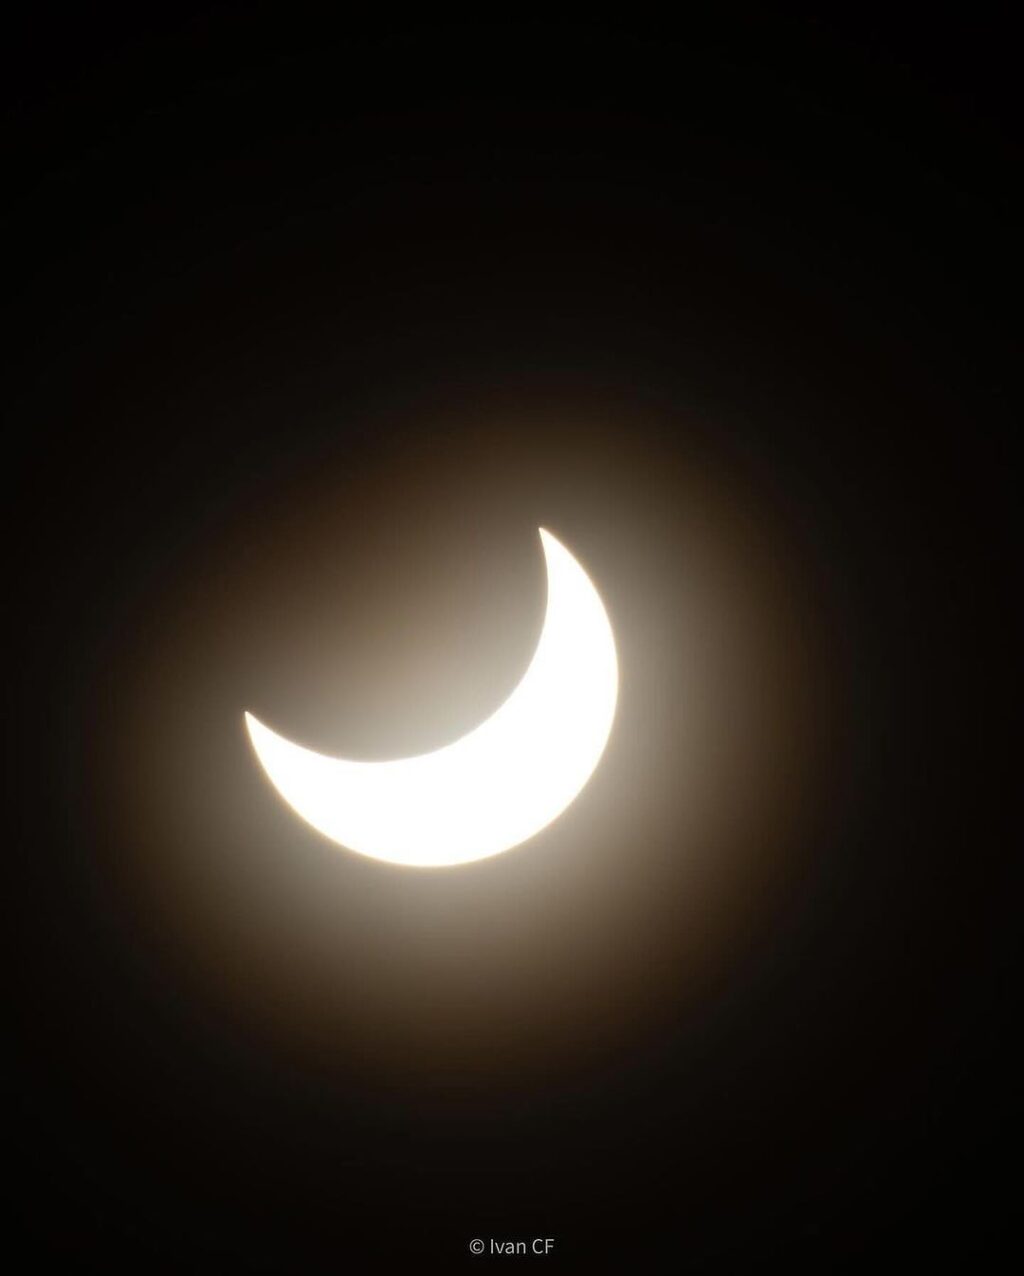 Eclipse solar anular de 2023: as primeiras imagens do fenômeno